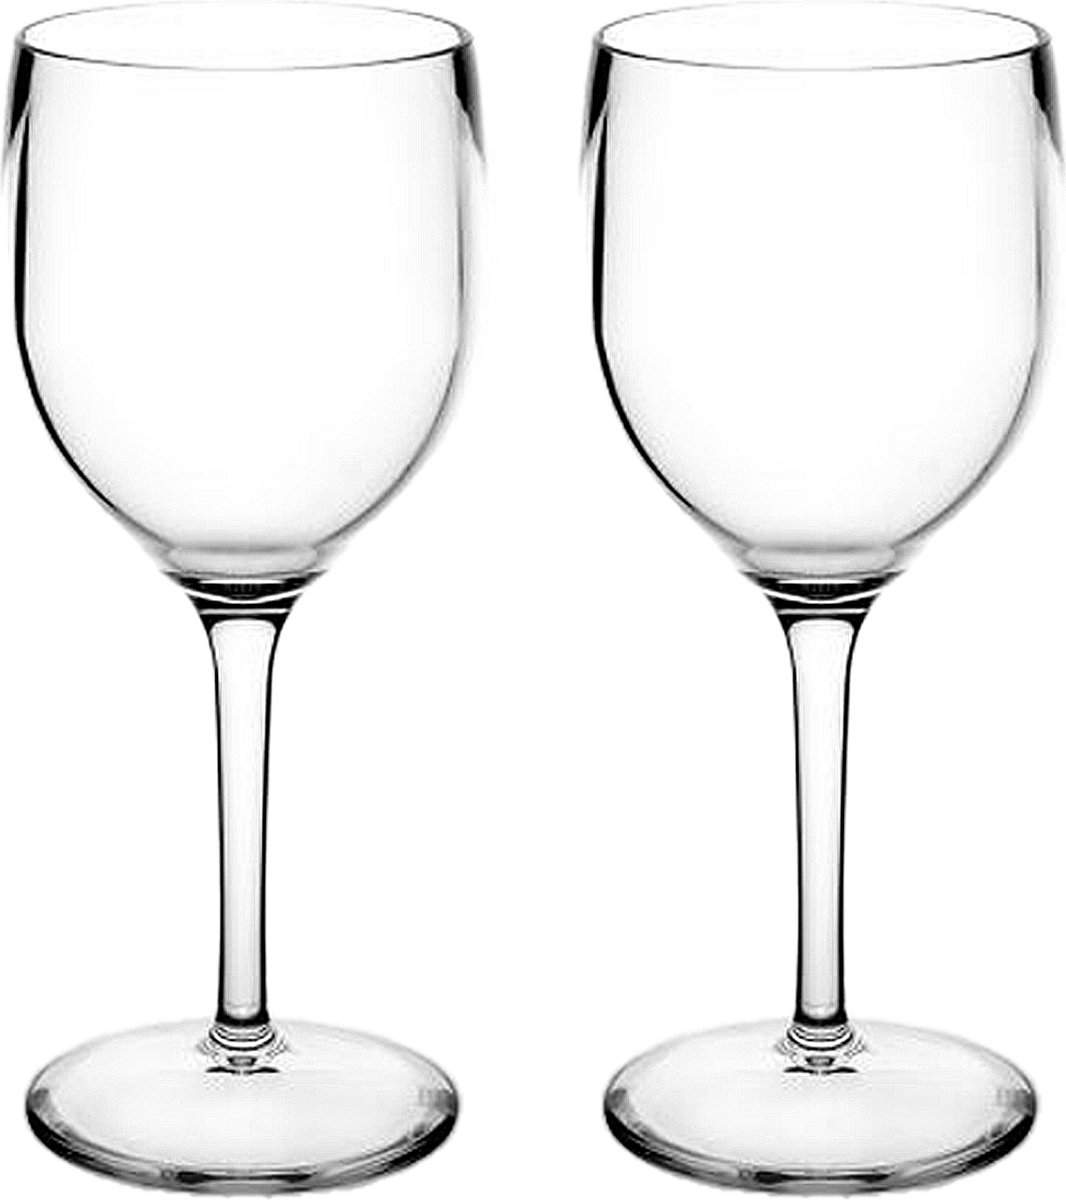 RBDRINKS Wijnglazen - Kunststof Wijnglazen - Wijnglazen Set - Witte Wijnglazen - Camping Glazen - Kunststof Glazen - Plastic Glazen - 20cl - Transparant - 2 Stuks